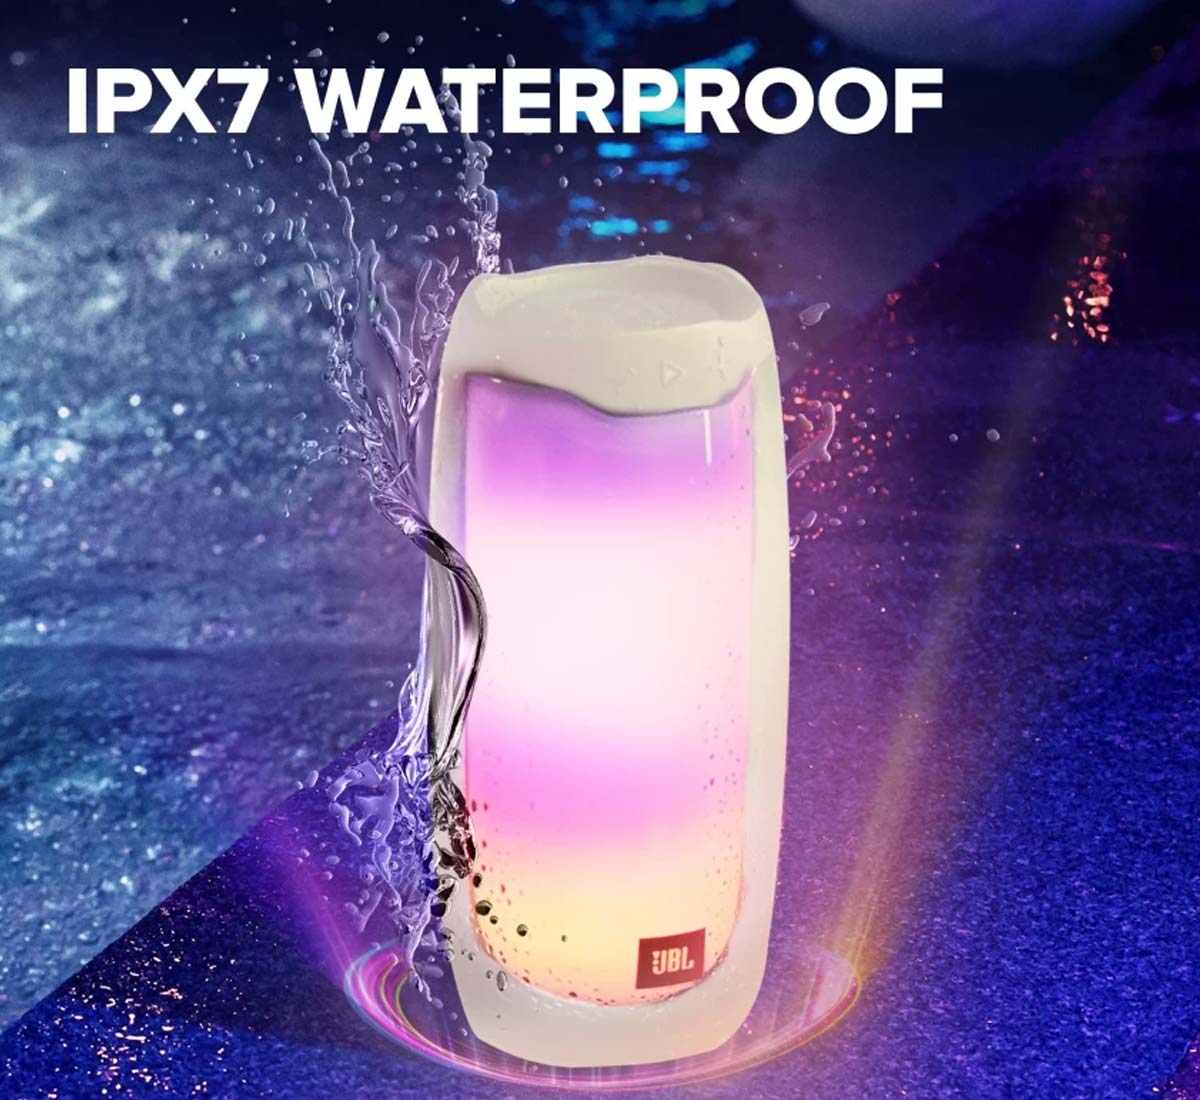 Loa JBL Pulse 4 được trang bị khả năng chống nước đạt tiêu chuẩn IPX7